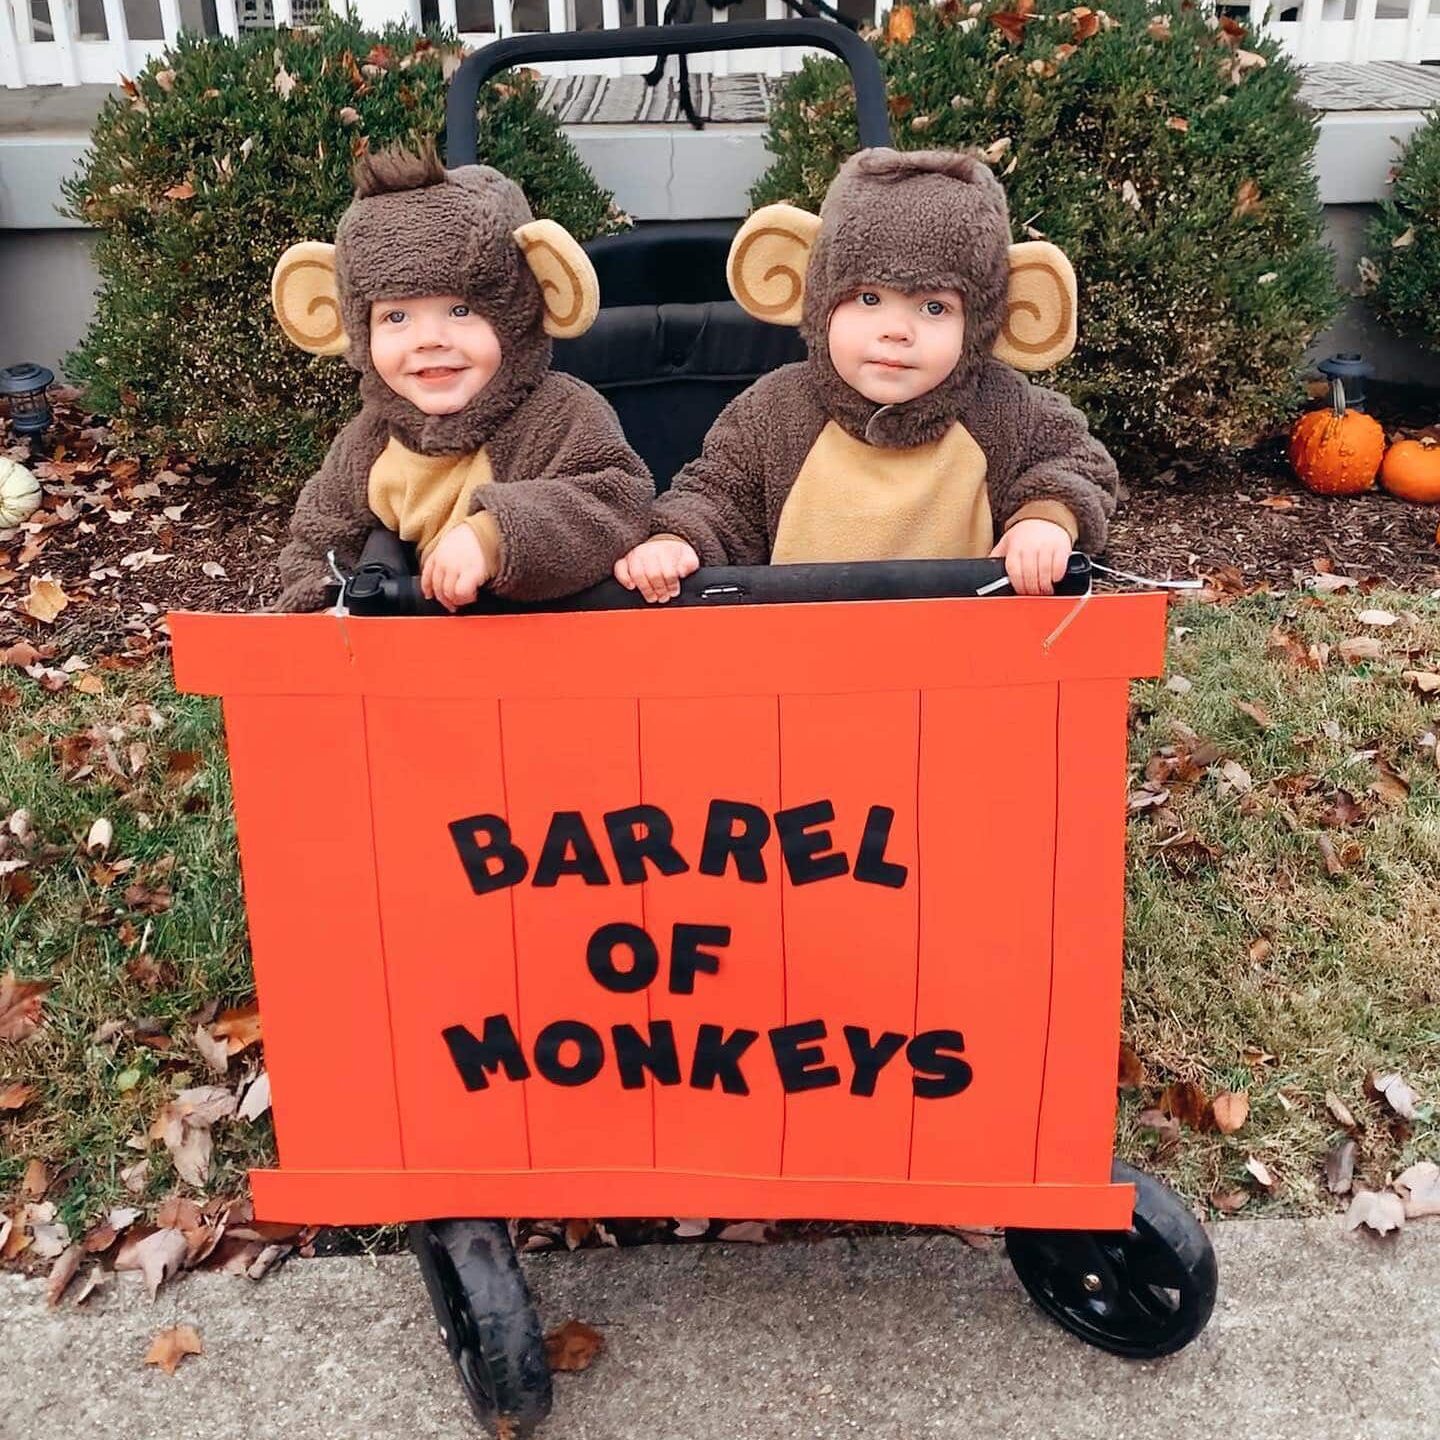 Twin Costume Ideas for Halloween: Barrel of Monkeys